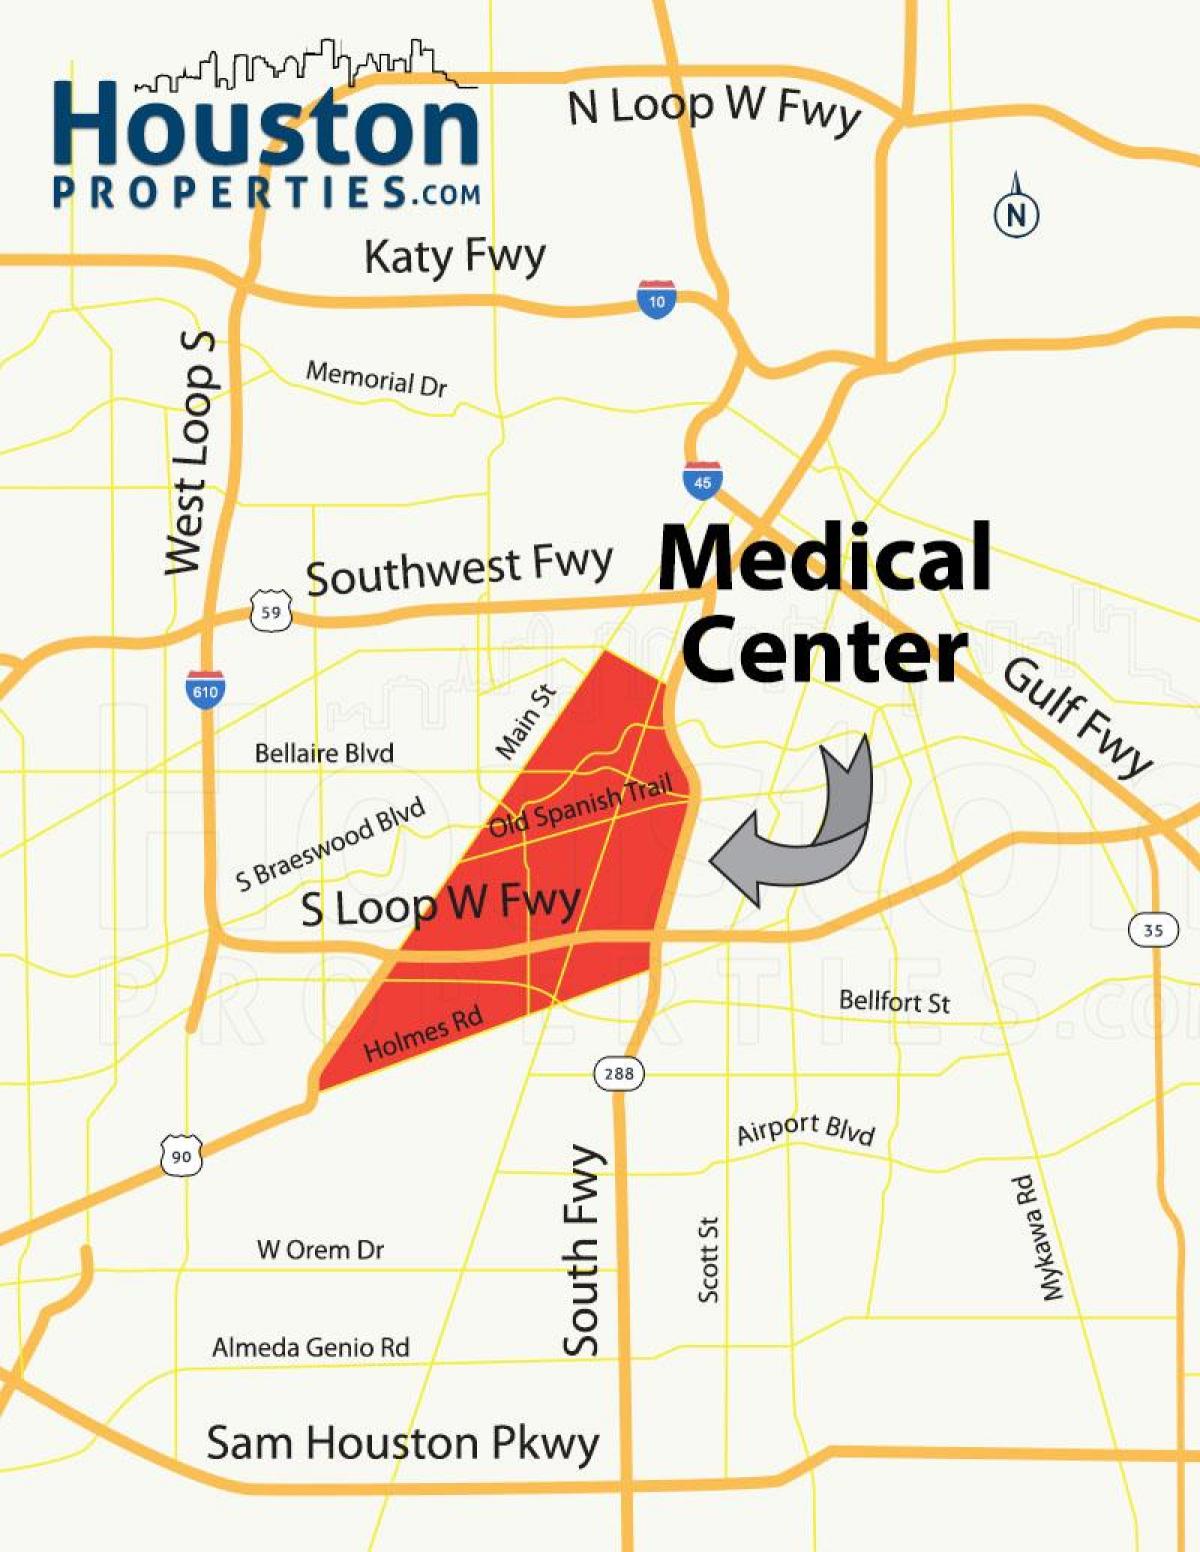 خريطة المركز الطبي في هيوستن